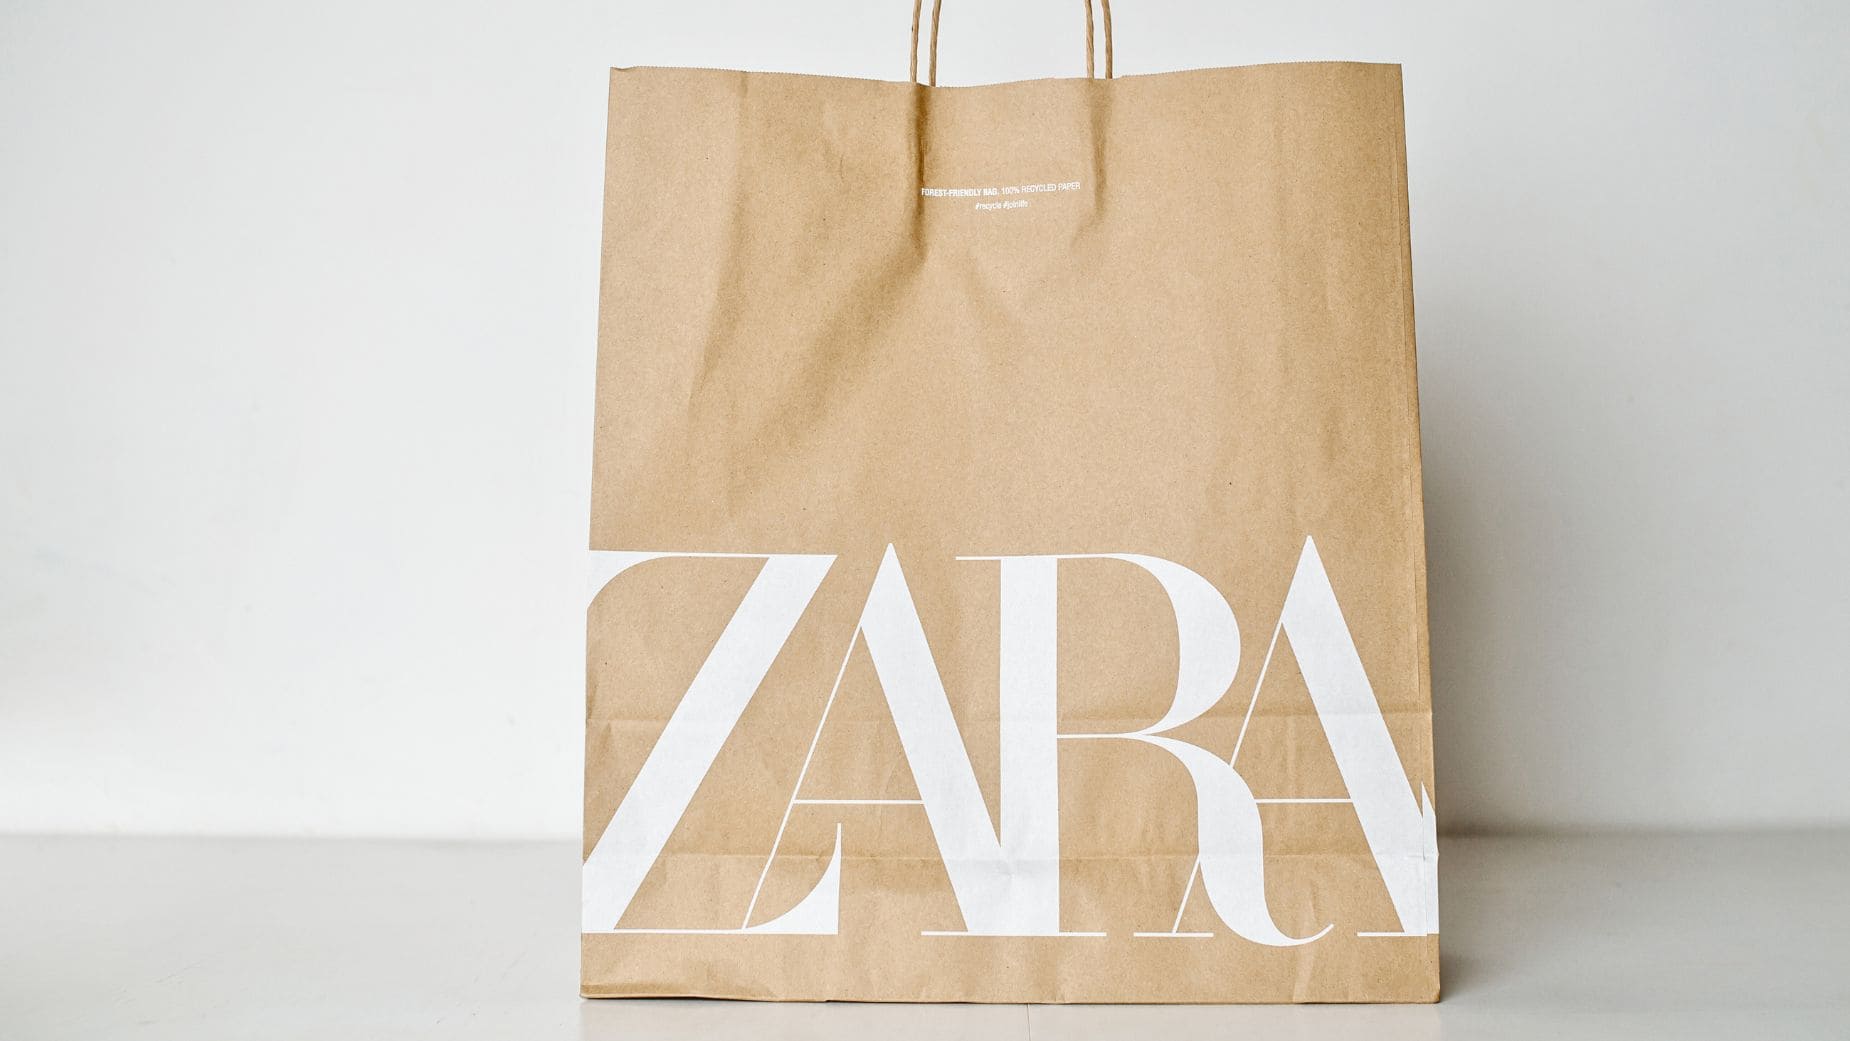 Zara devoluciones con pago adicional en compras online